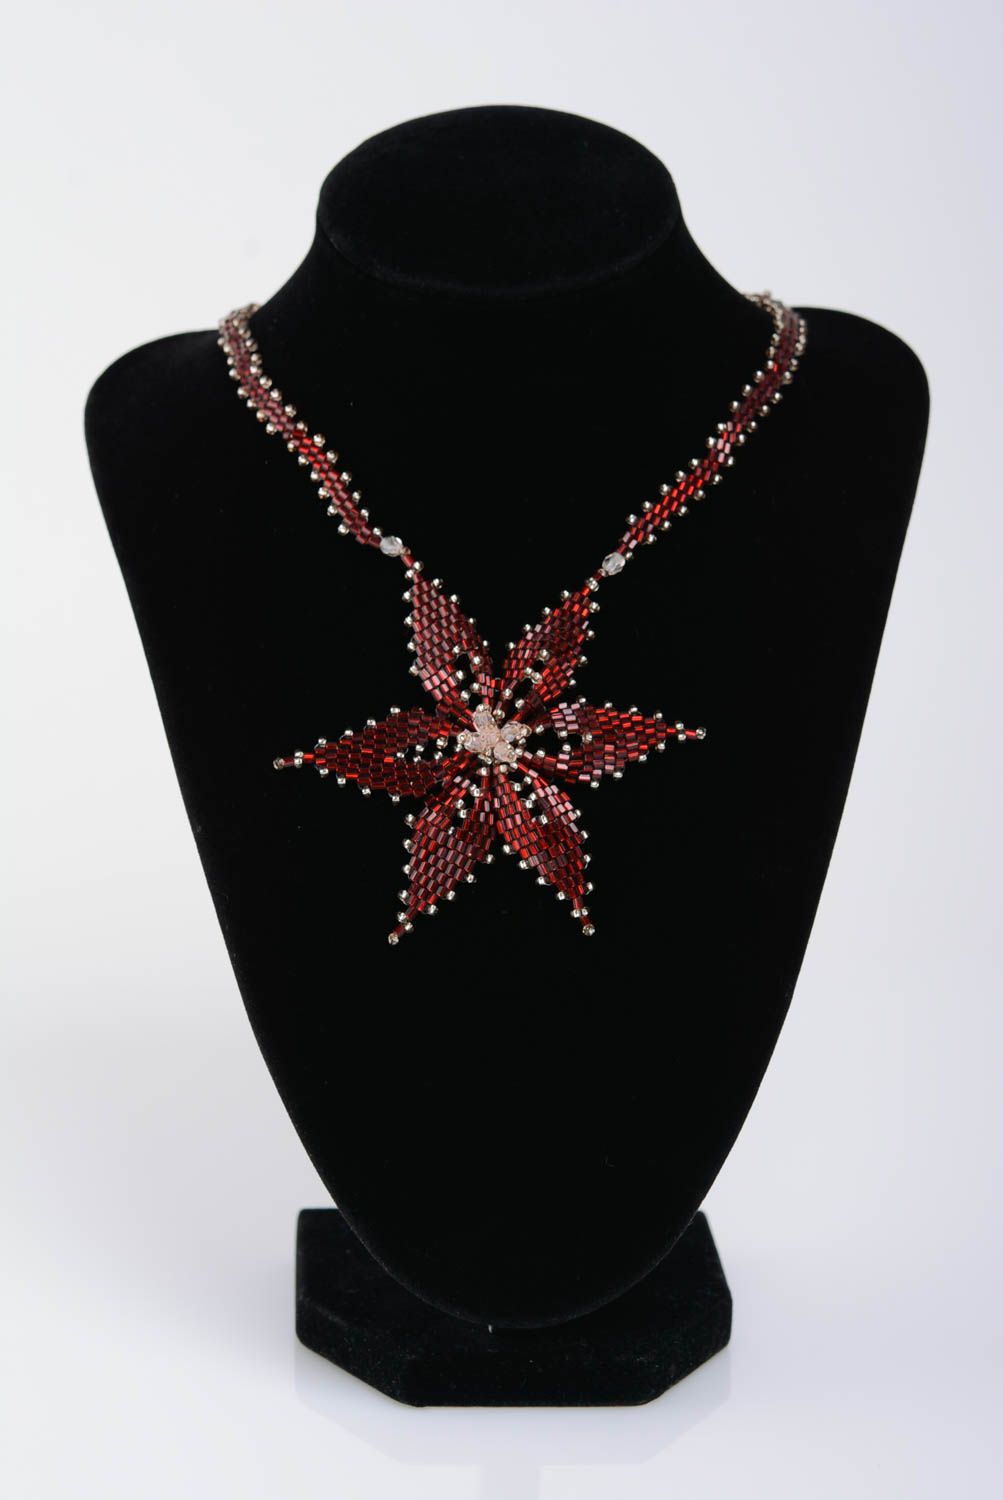 Подвеска на шею из бисера ручной работы в виде звезды бордовая красивая оригинальная фото 2